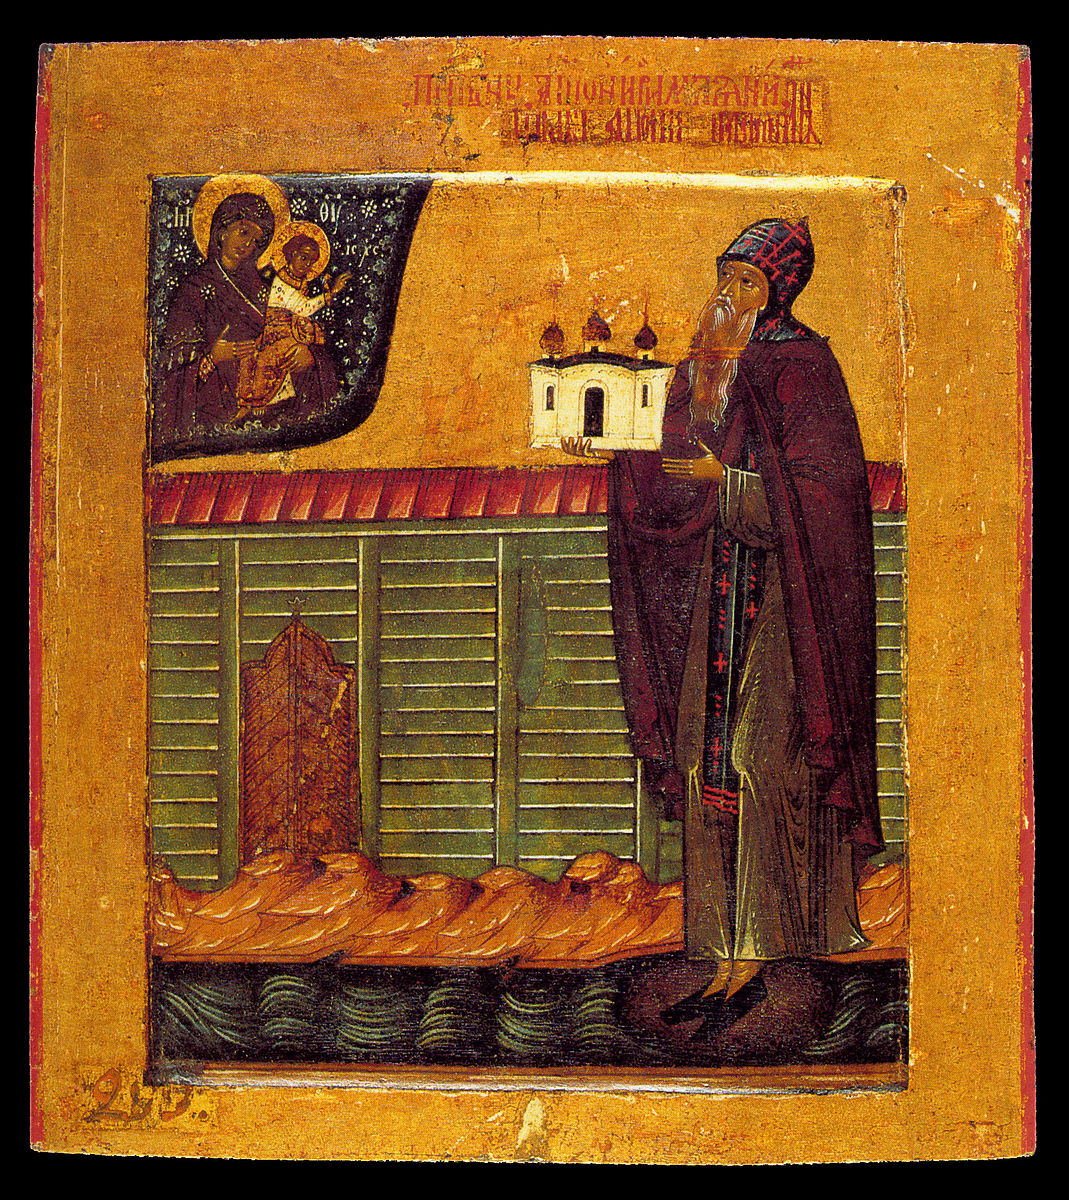 Les reliques d'Antoine de Rome, un saint orthodoxe du XIIe siècle, ont été retrouvées à Novgorod